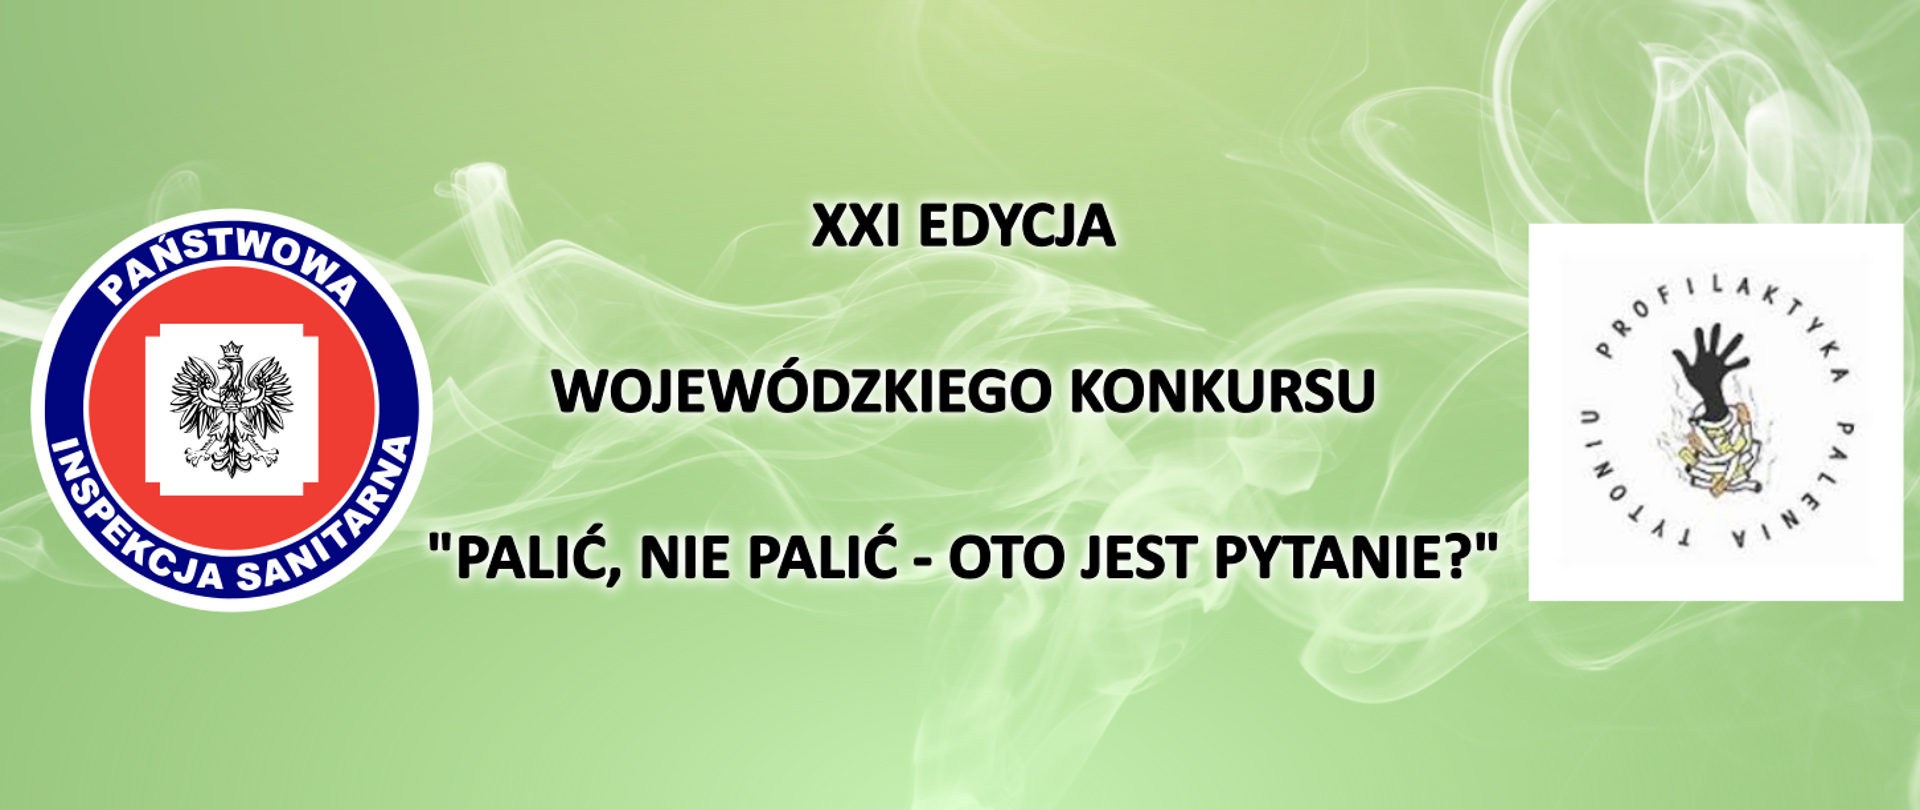 Baner w odcieniach zielonego koloru w logotypem Państwowj inspekcji pracy oraz Profilaktyką palenia Tytoniu pomiędzy którymi widnieje napis - 21 edycja wojewódzkiego konkursu " Palić, nie palić - oto jest pytanie?"